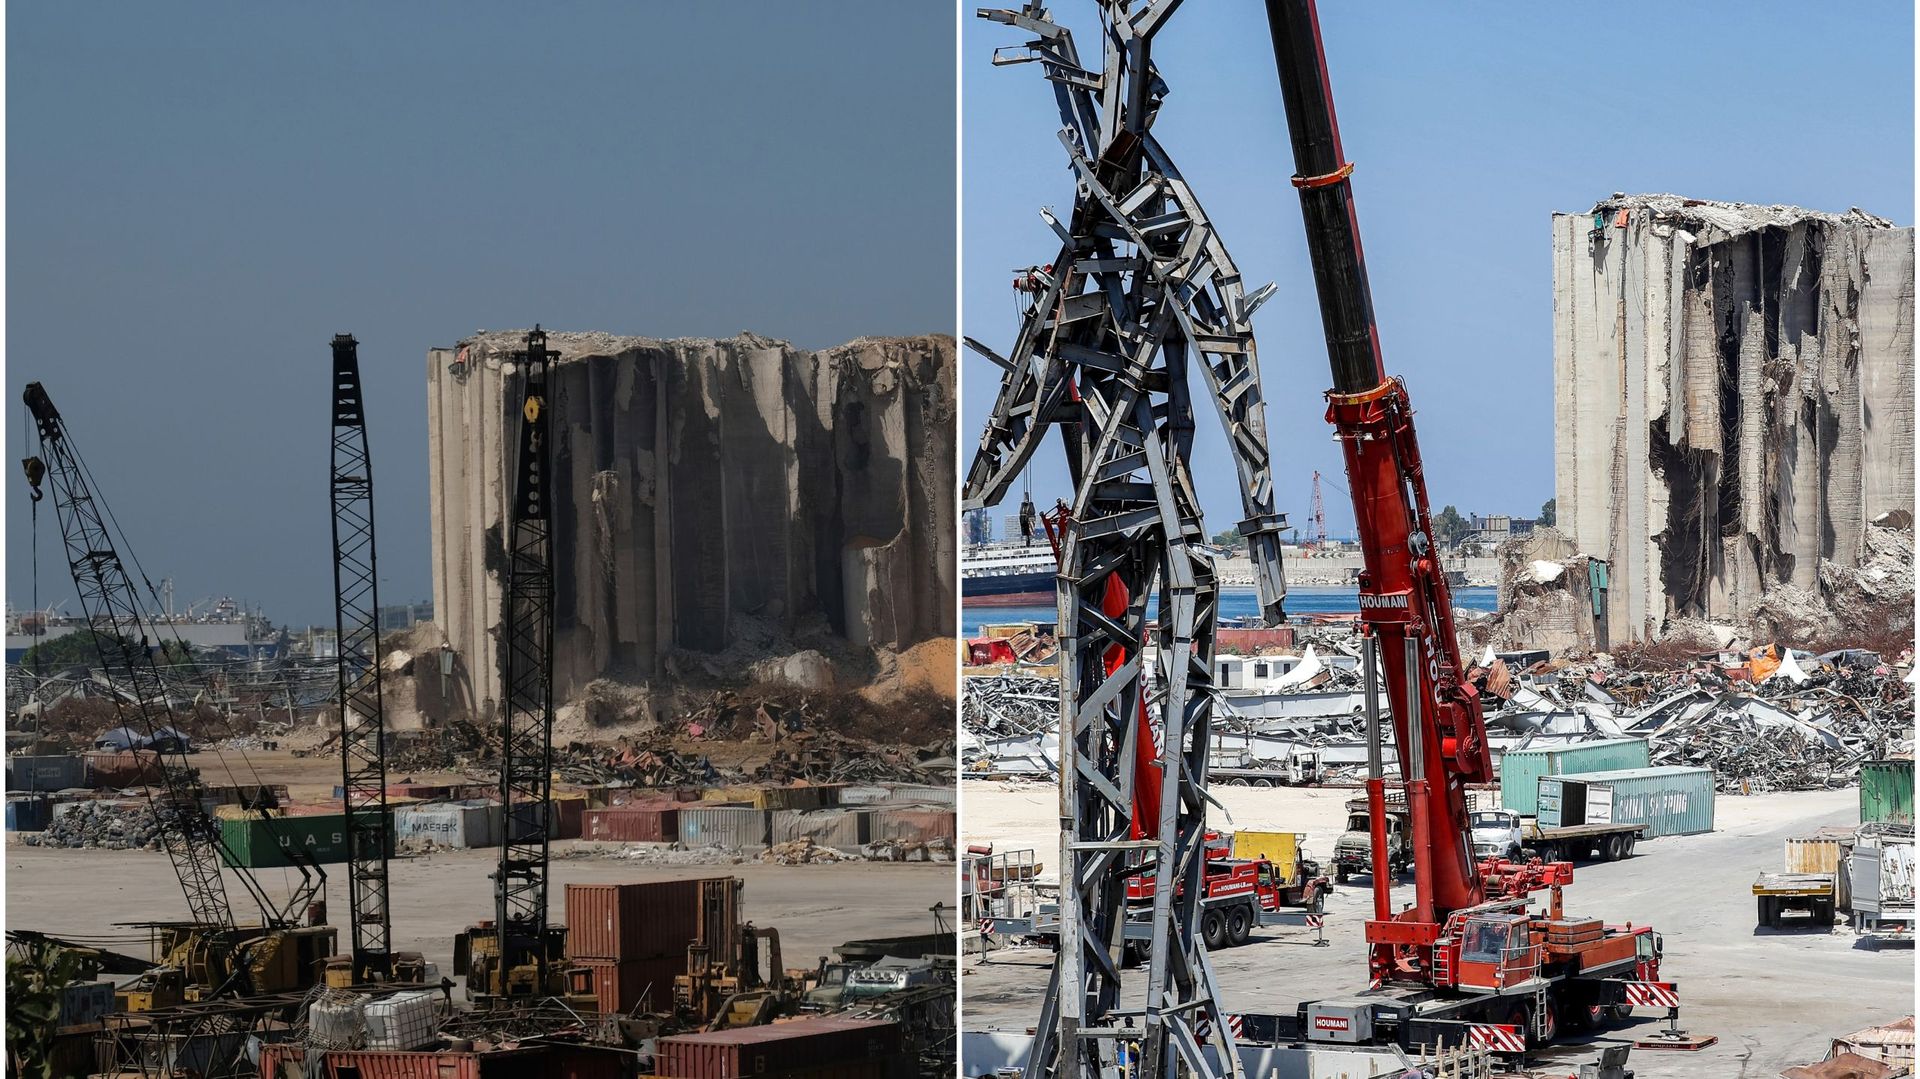 A gauche, le port de Beyrouth le 29 septembre 2020, un peu moins de deux mois après l’explosion. A droite, fin juillet la sculpture "The gesture" réalisée avec les débris de l’explosion installée dans le port sinistré de Beyrouth.